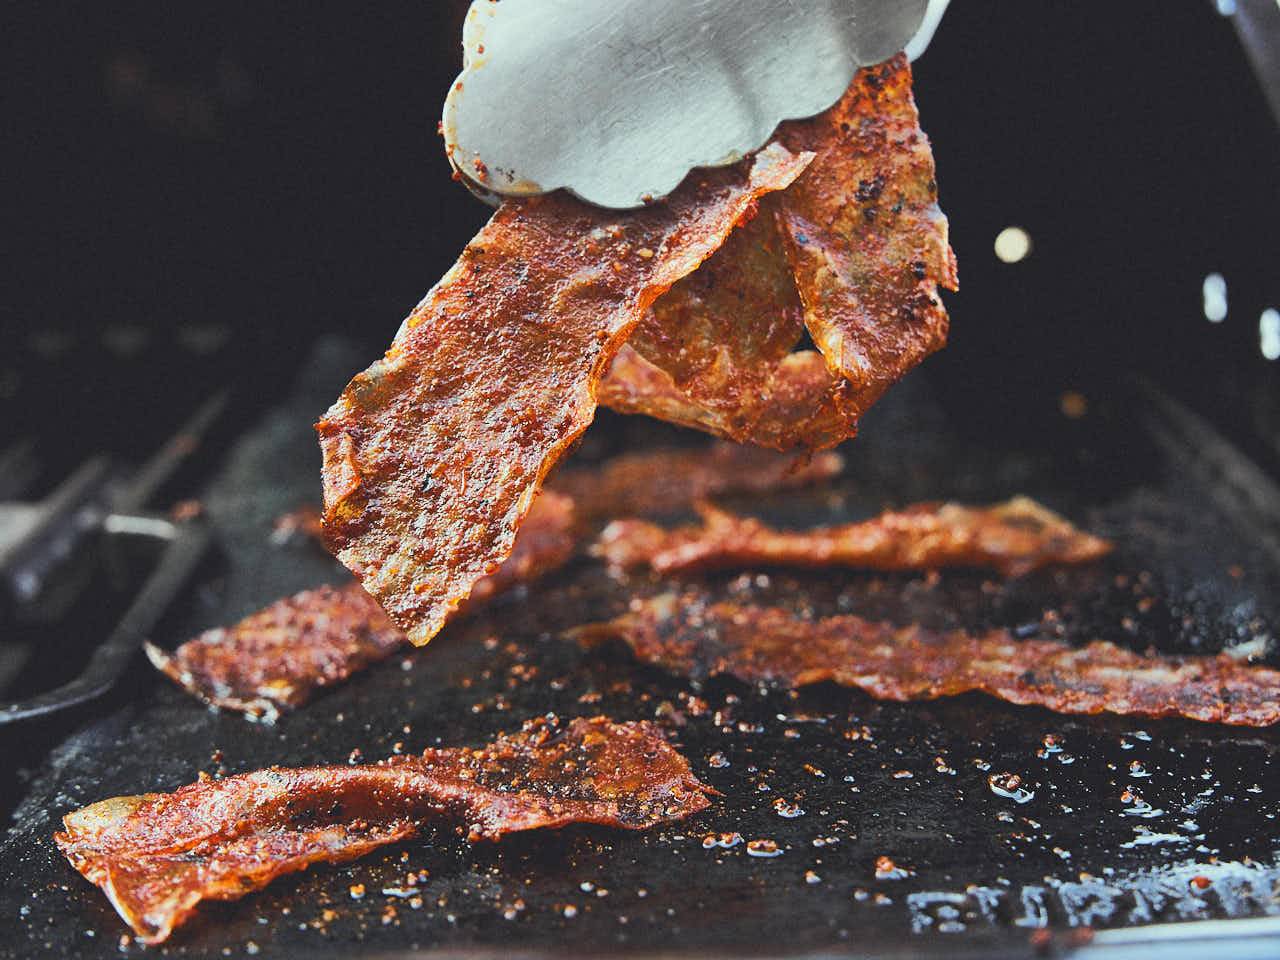 Veganer Bacon